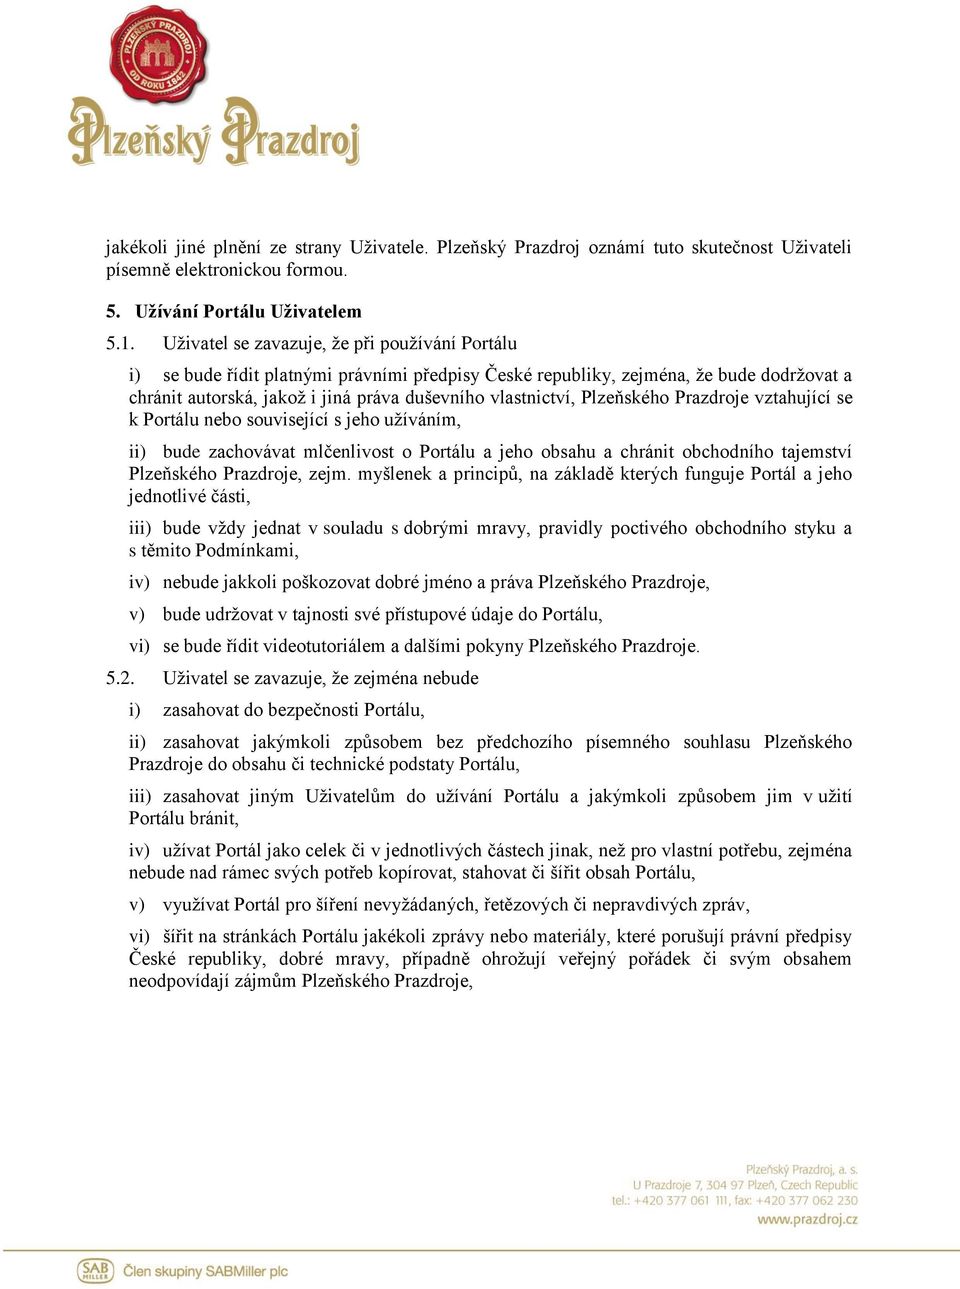 Plzeňského Prazdroje vztahující se k Portálu nebo související s jeho užíváním, ii) bude zachovávat mlčenlivost o Portálu a jeho obsahu a chránit obchodního tajemství Plzeňského Prazdroje, zejm.